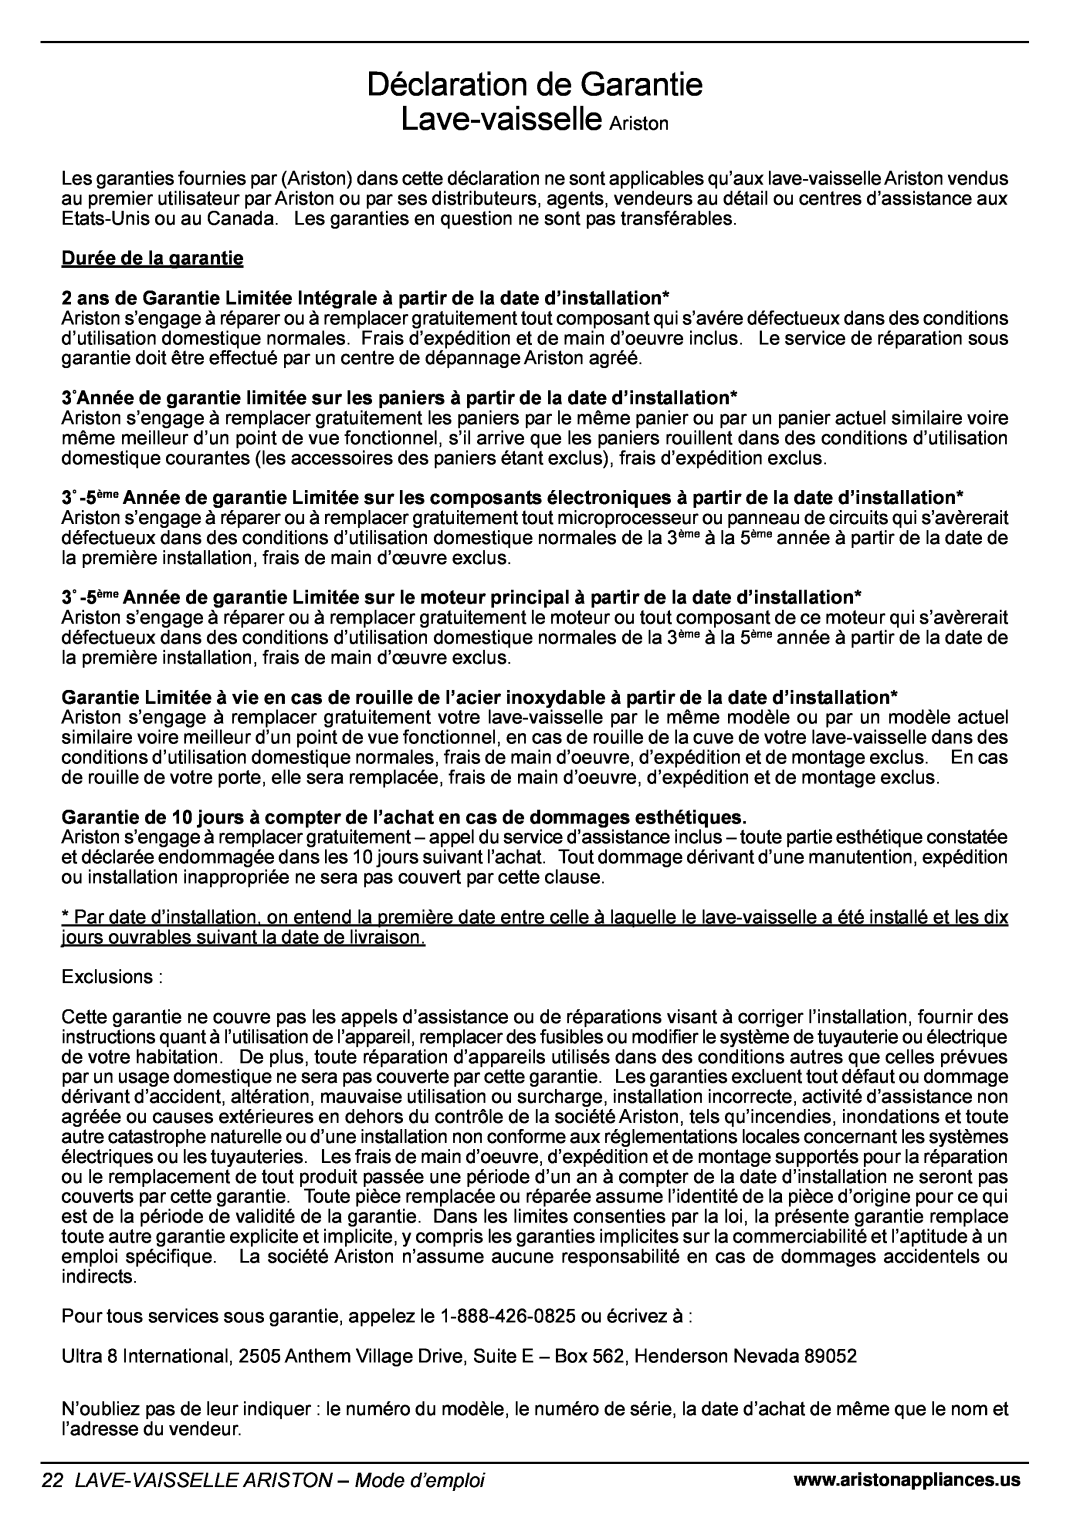 Ariston LI 670 B-S-W manual Déclaration de Garantie Lave-vaisselle Ariston, LAVE-VAISSELLE ARISTON - Mode d’emploi 